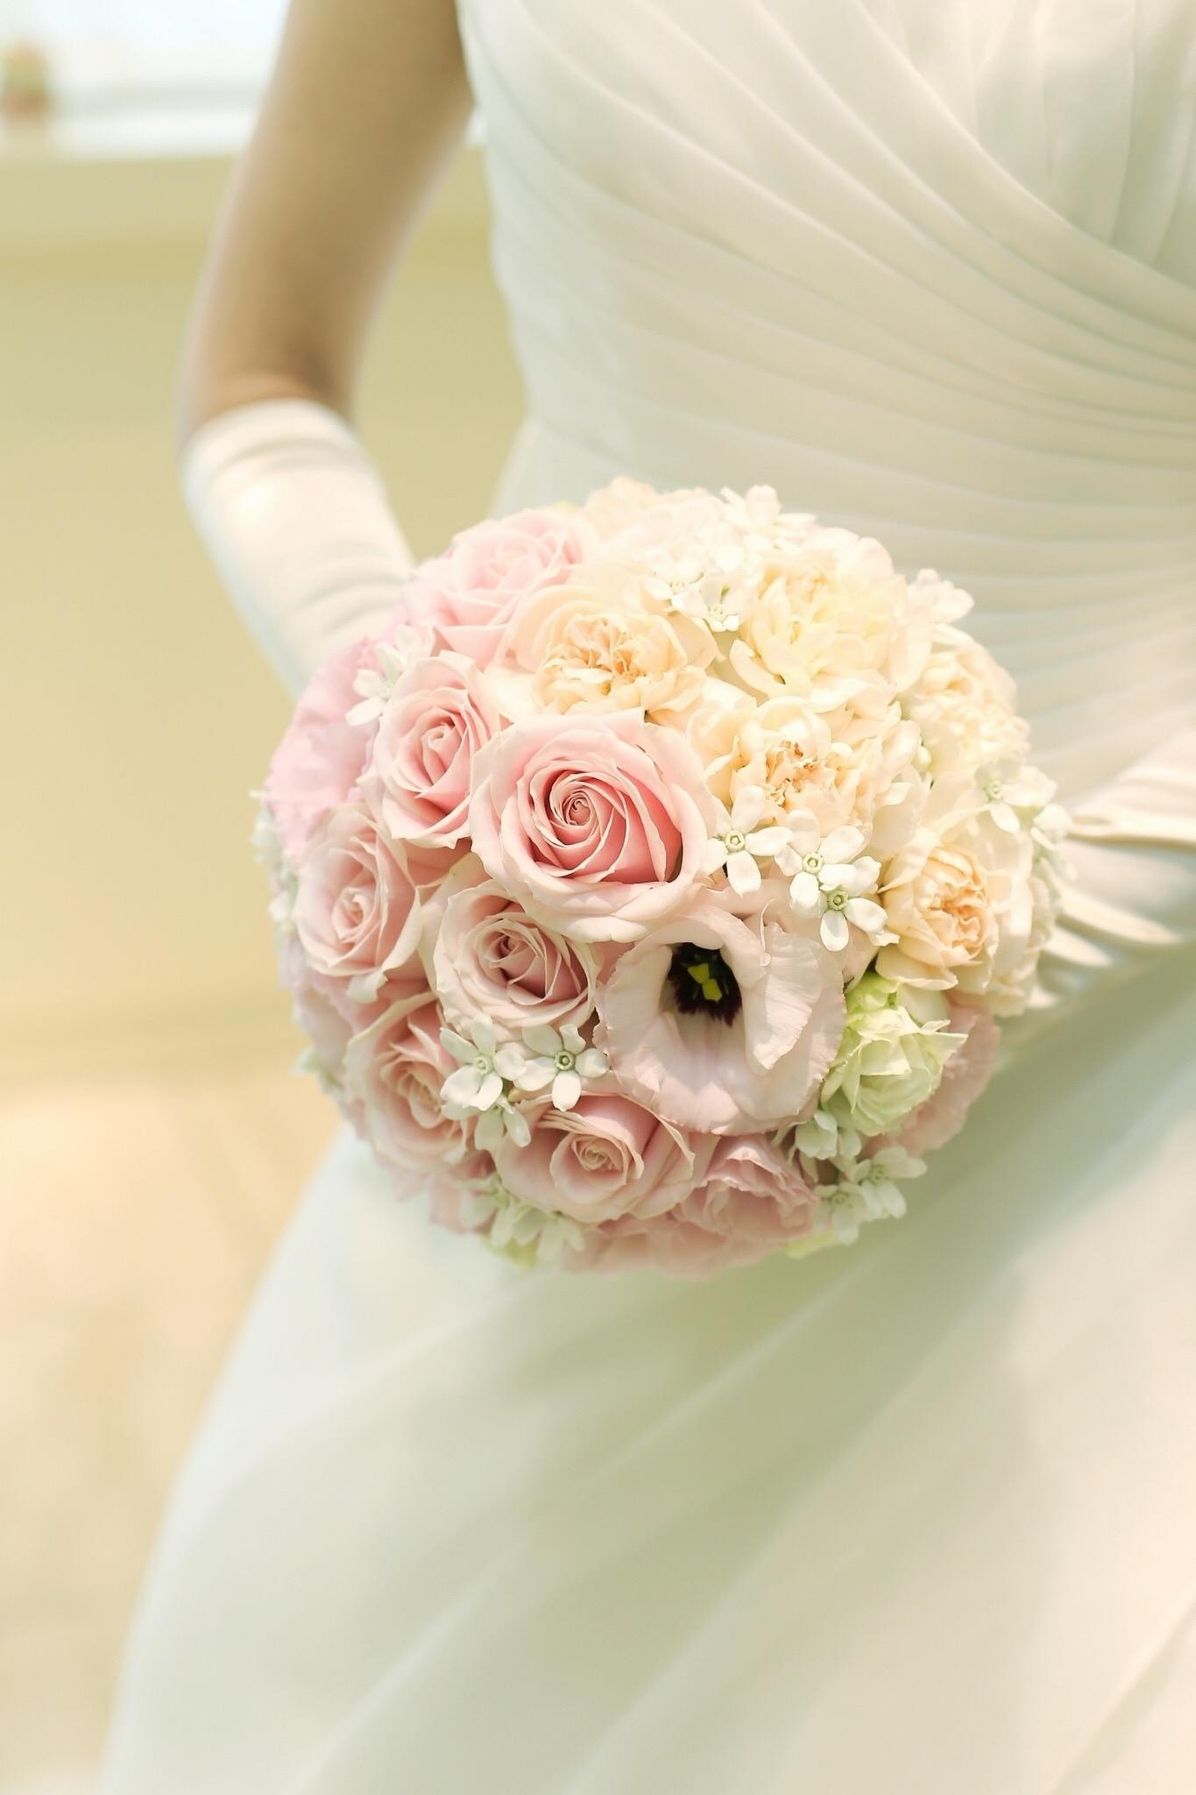 人気ウェディングブーケ完全マニュアル 花嫁を引き立てる花束画像まとめ ウェディングニュース